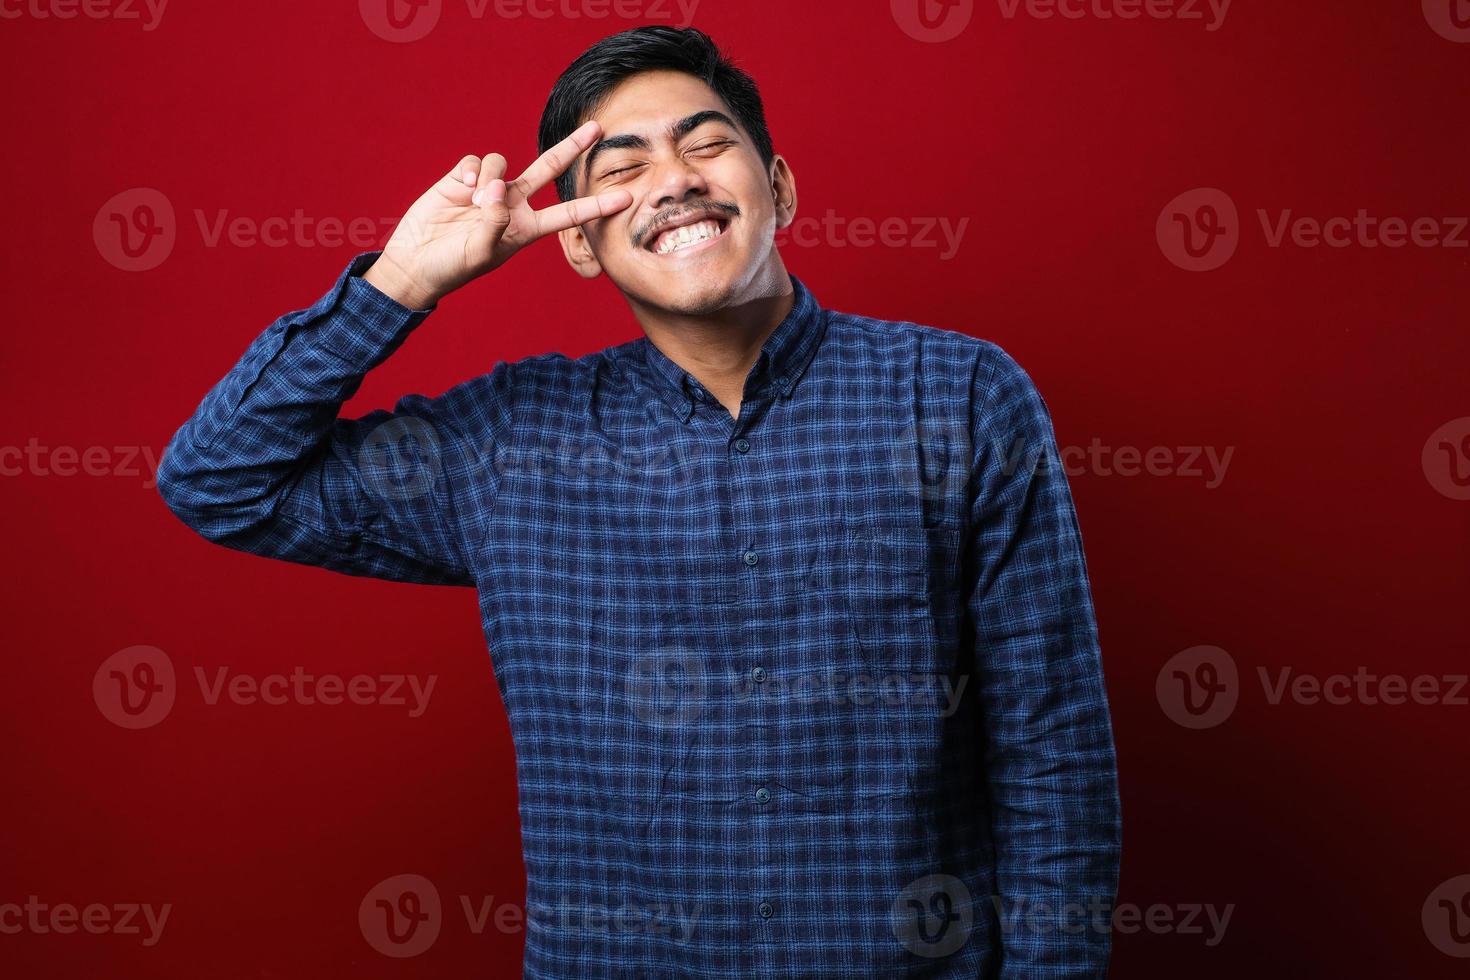 jovem asiático bonito vestindo camisa casual, fazendo o símbolo da paz com os dedos sobre o rosto, sorrindo alegre mostrando vitória foto